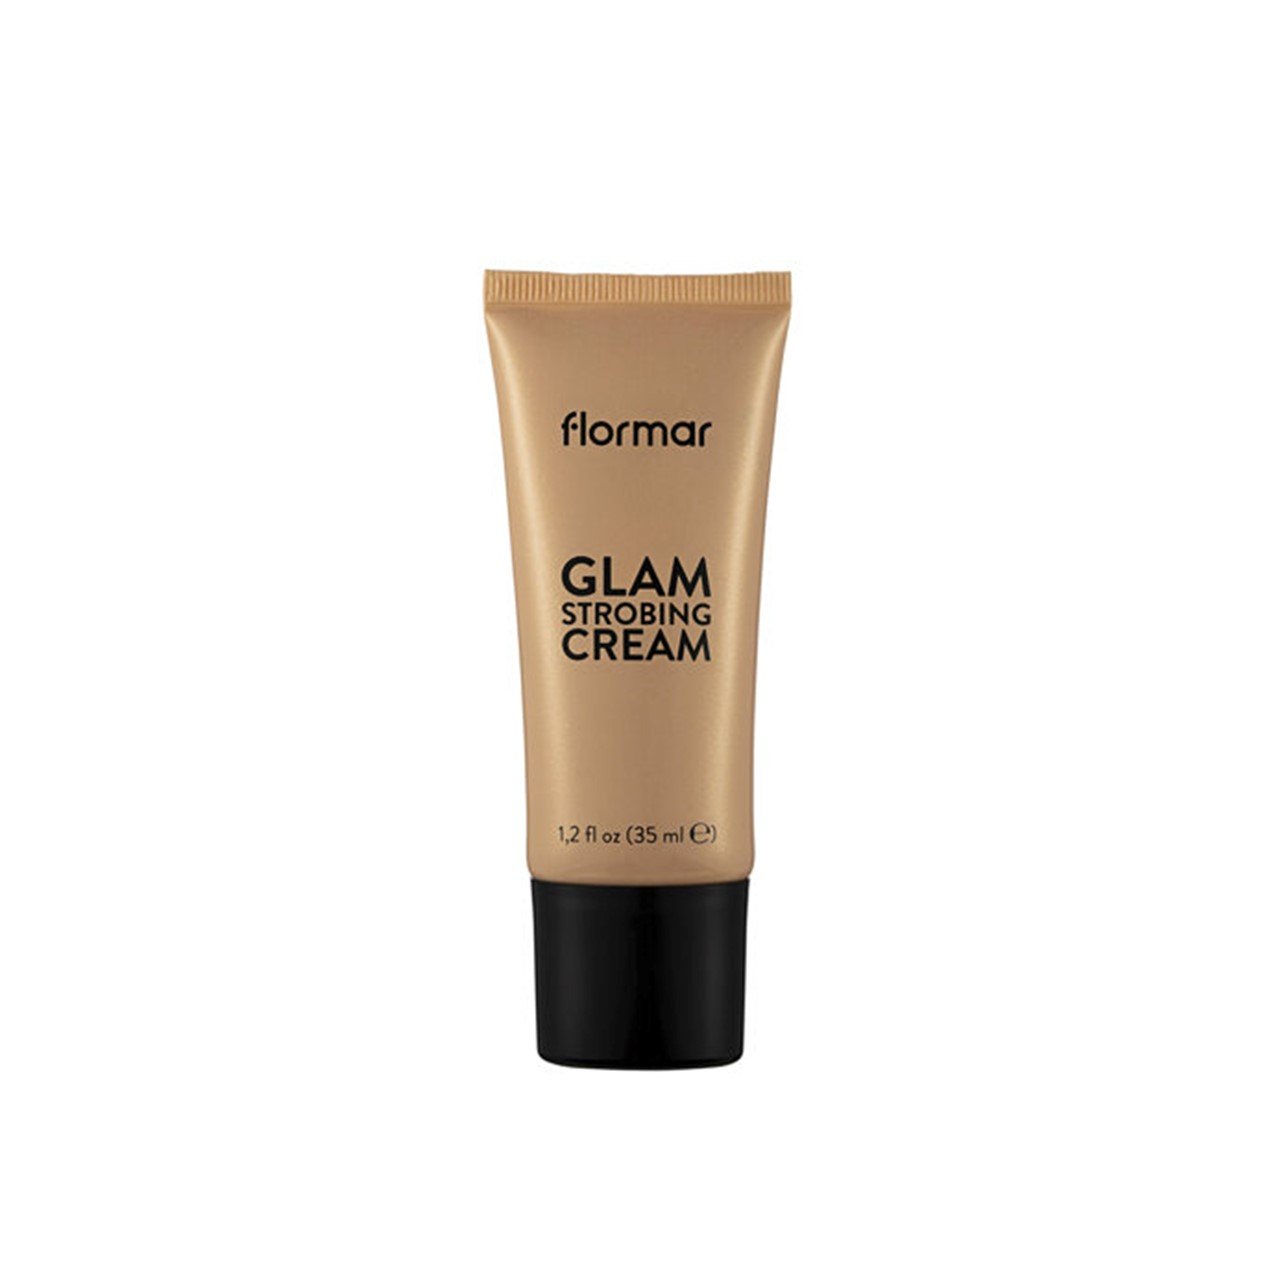 Flormar Glam Strobing Cream